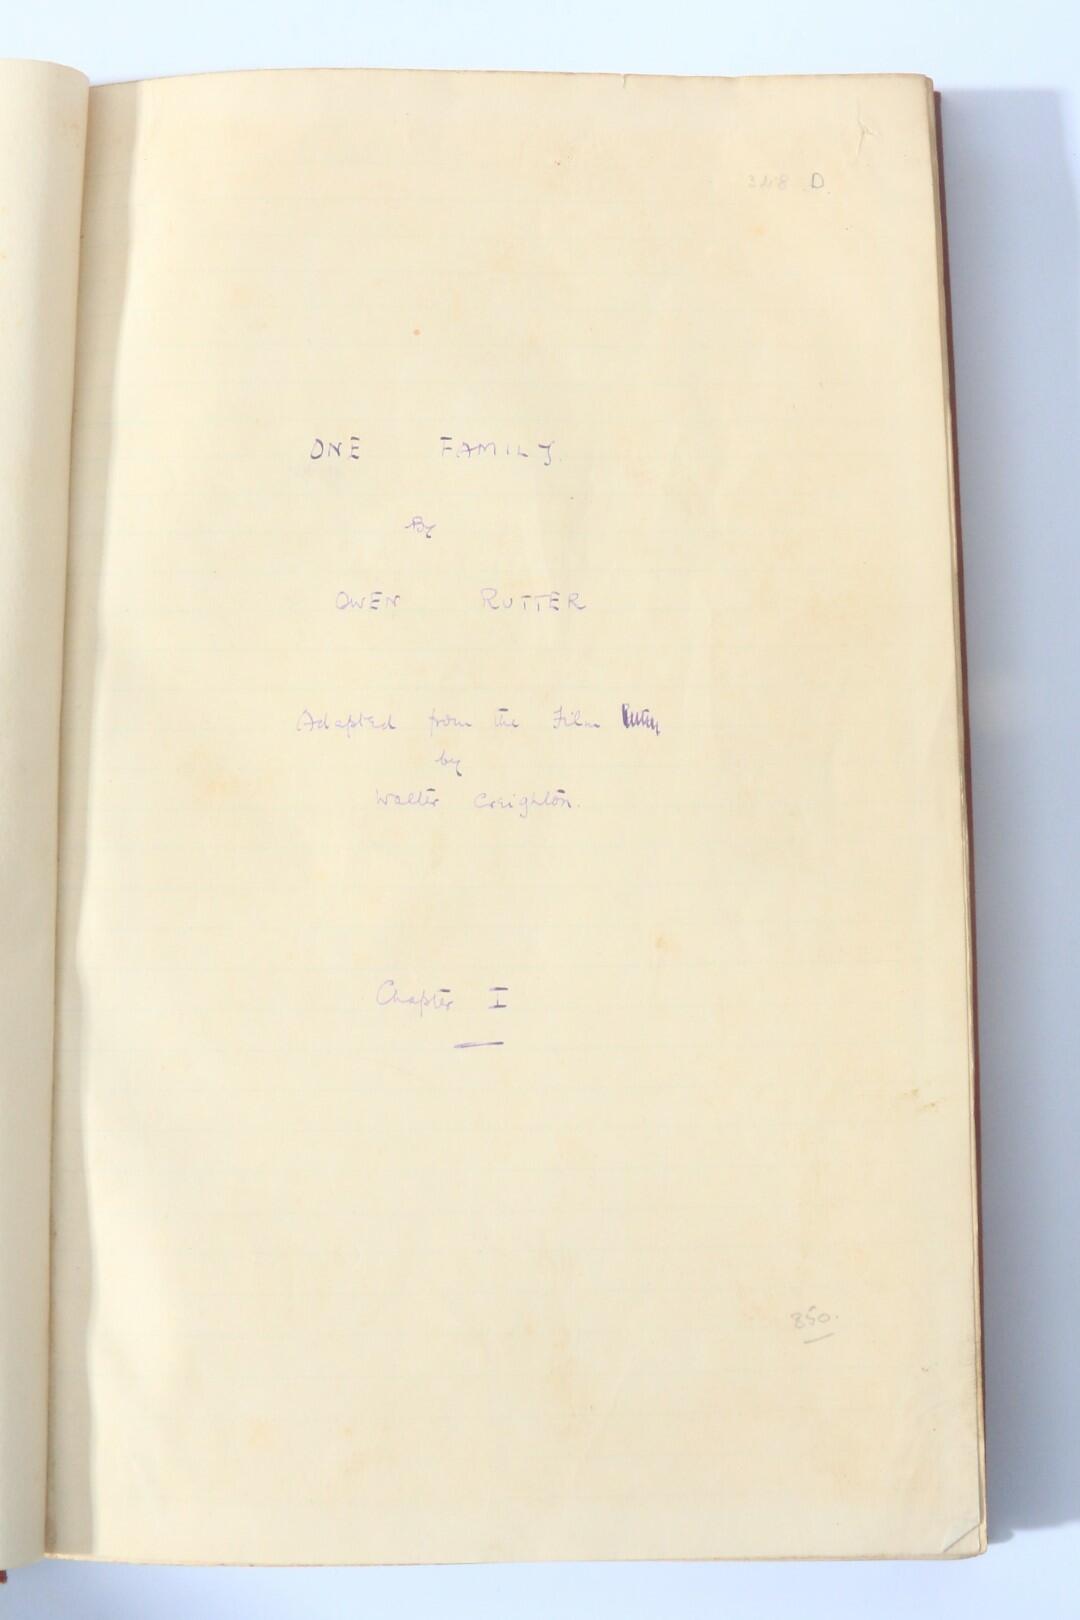 Owen Rutter - One Family Autograph Manuscript - No Publisher, 1930, Manuscript.